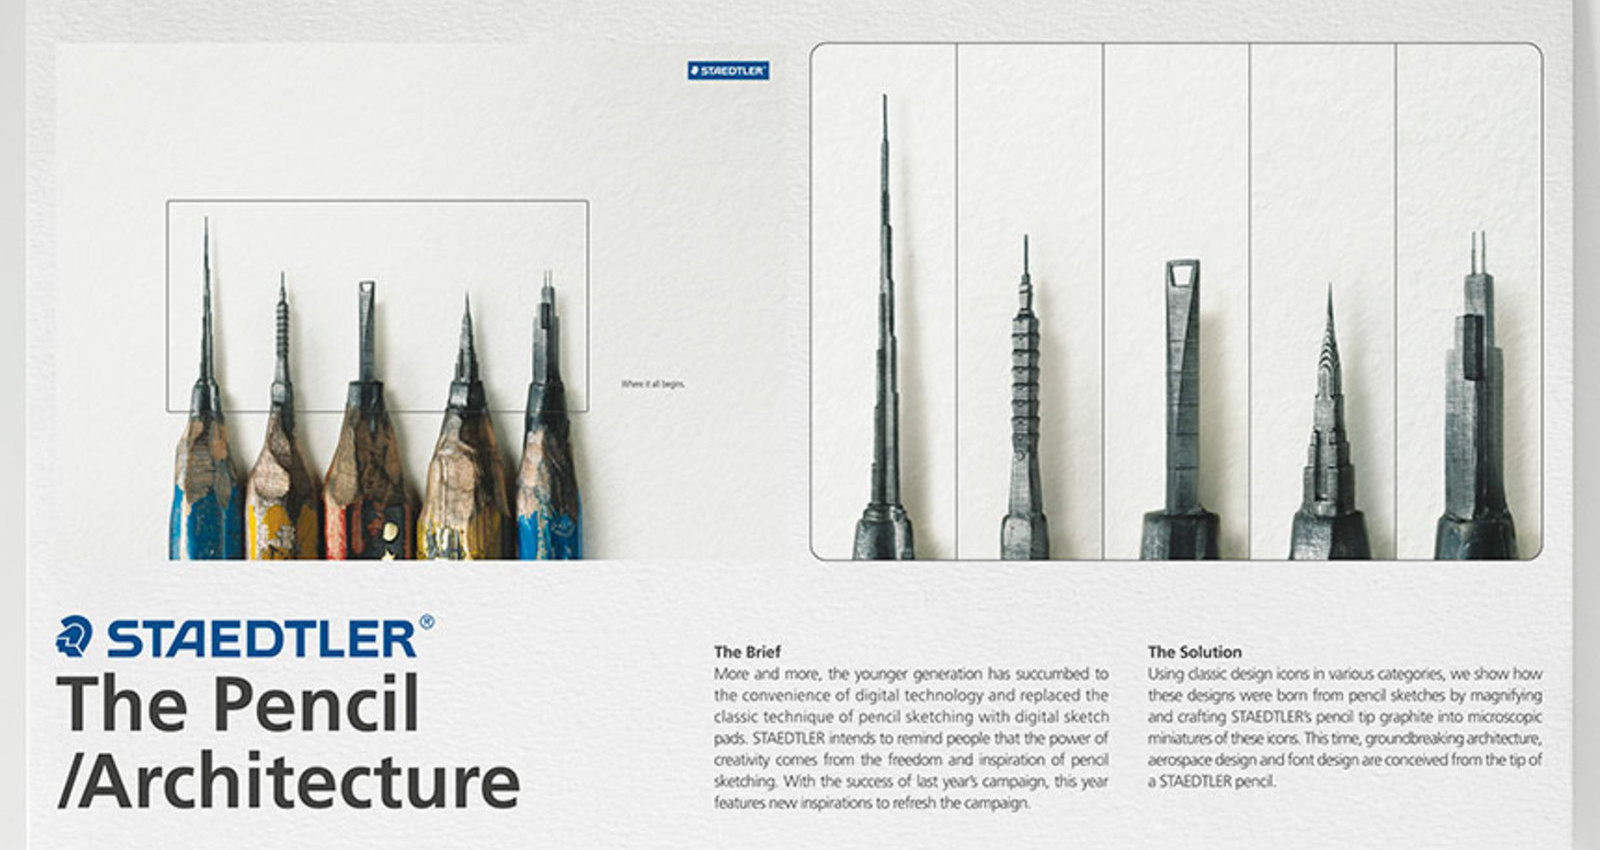 The Pencil - Architecture